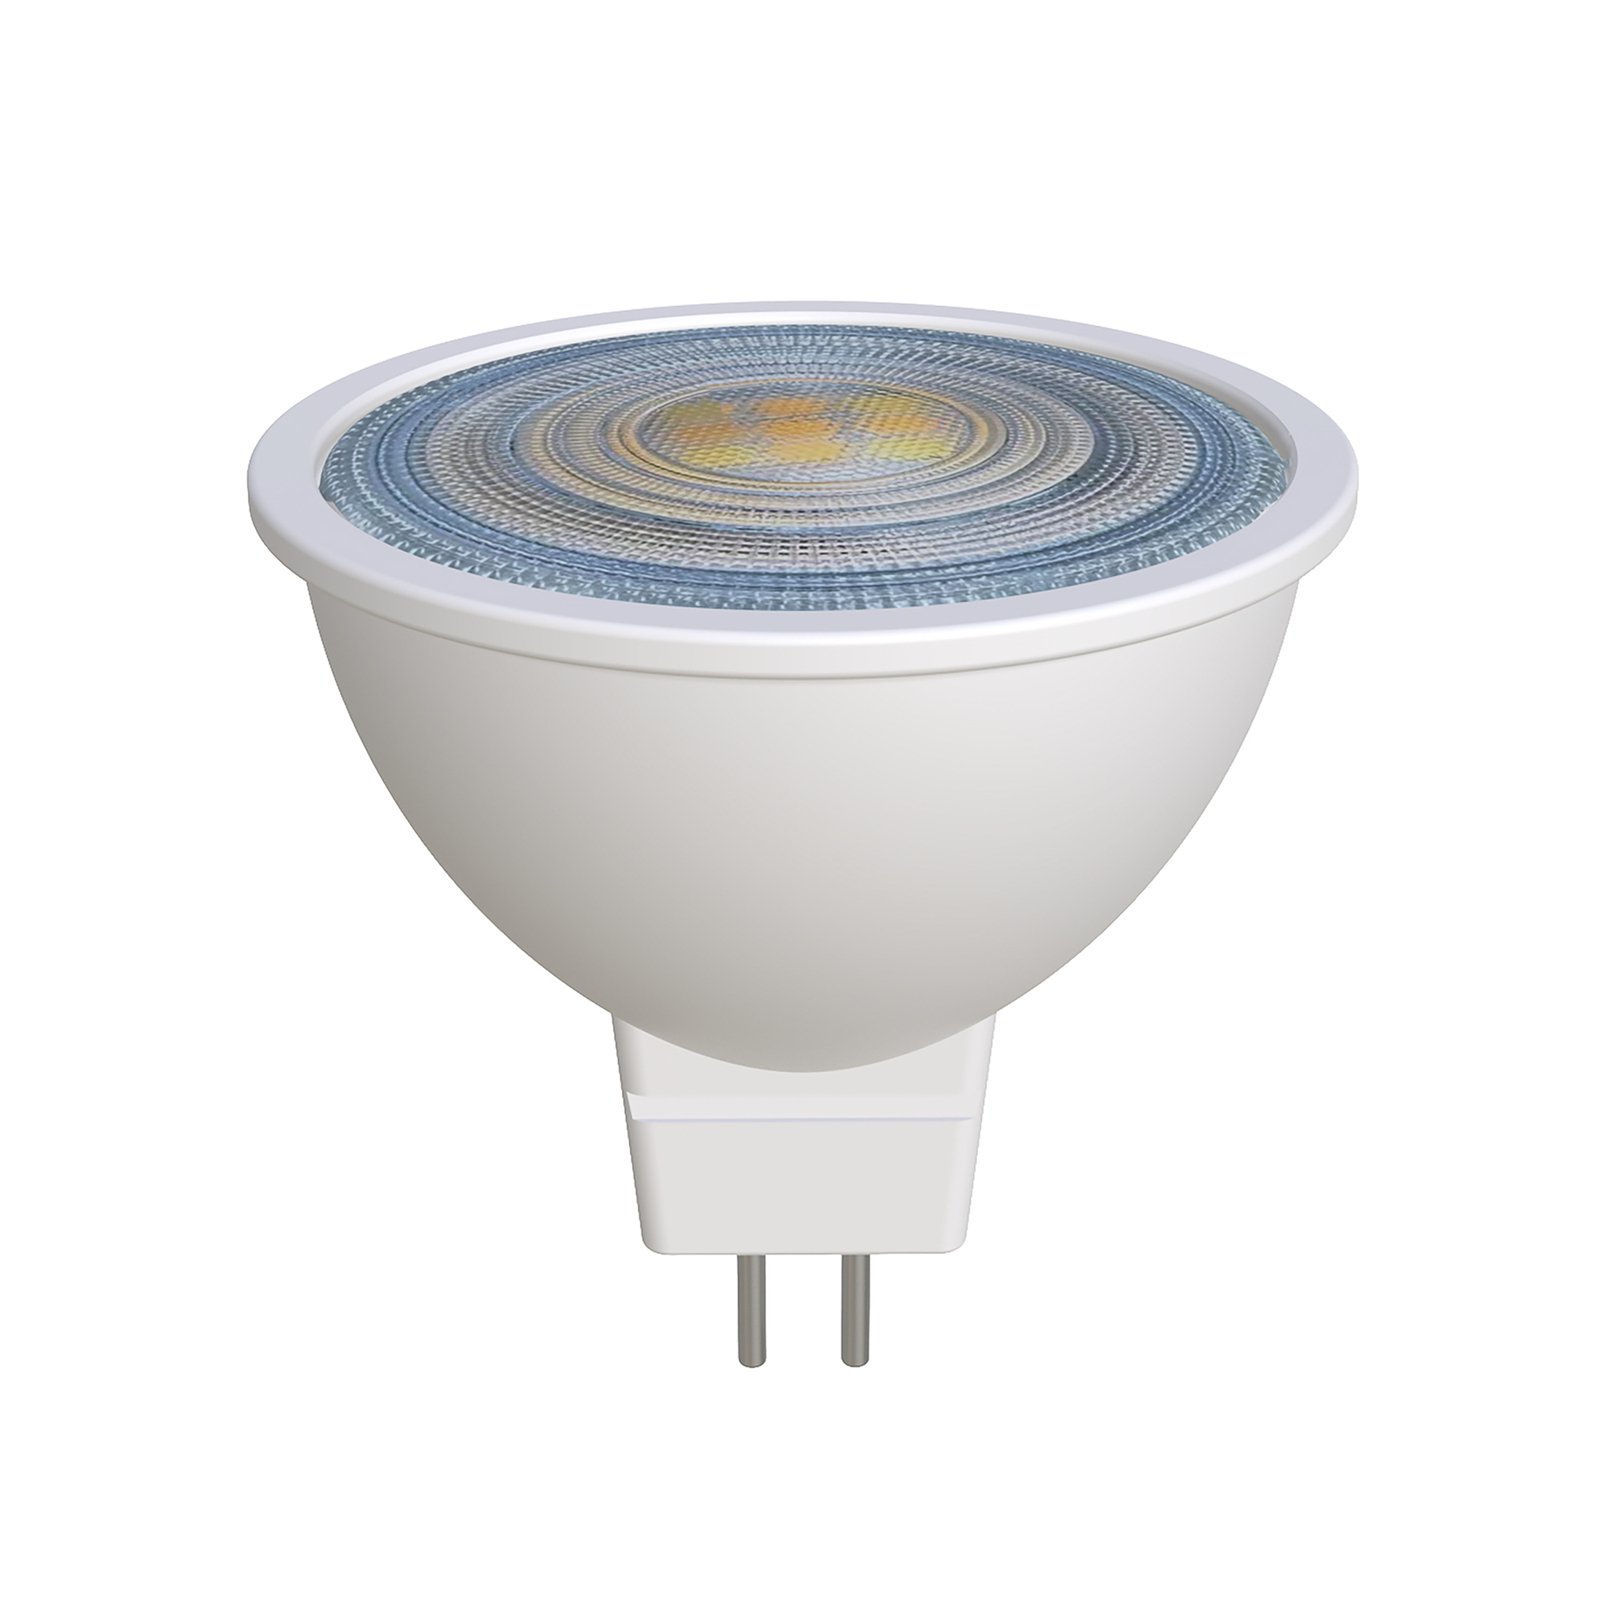 Prios LED reflectorlamp GU5.3 7.5W 621lm 36° wit 827 set van 3